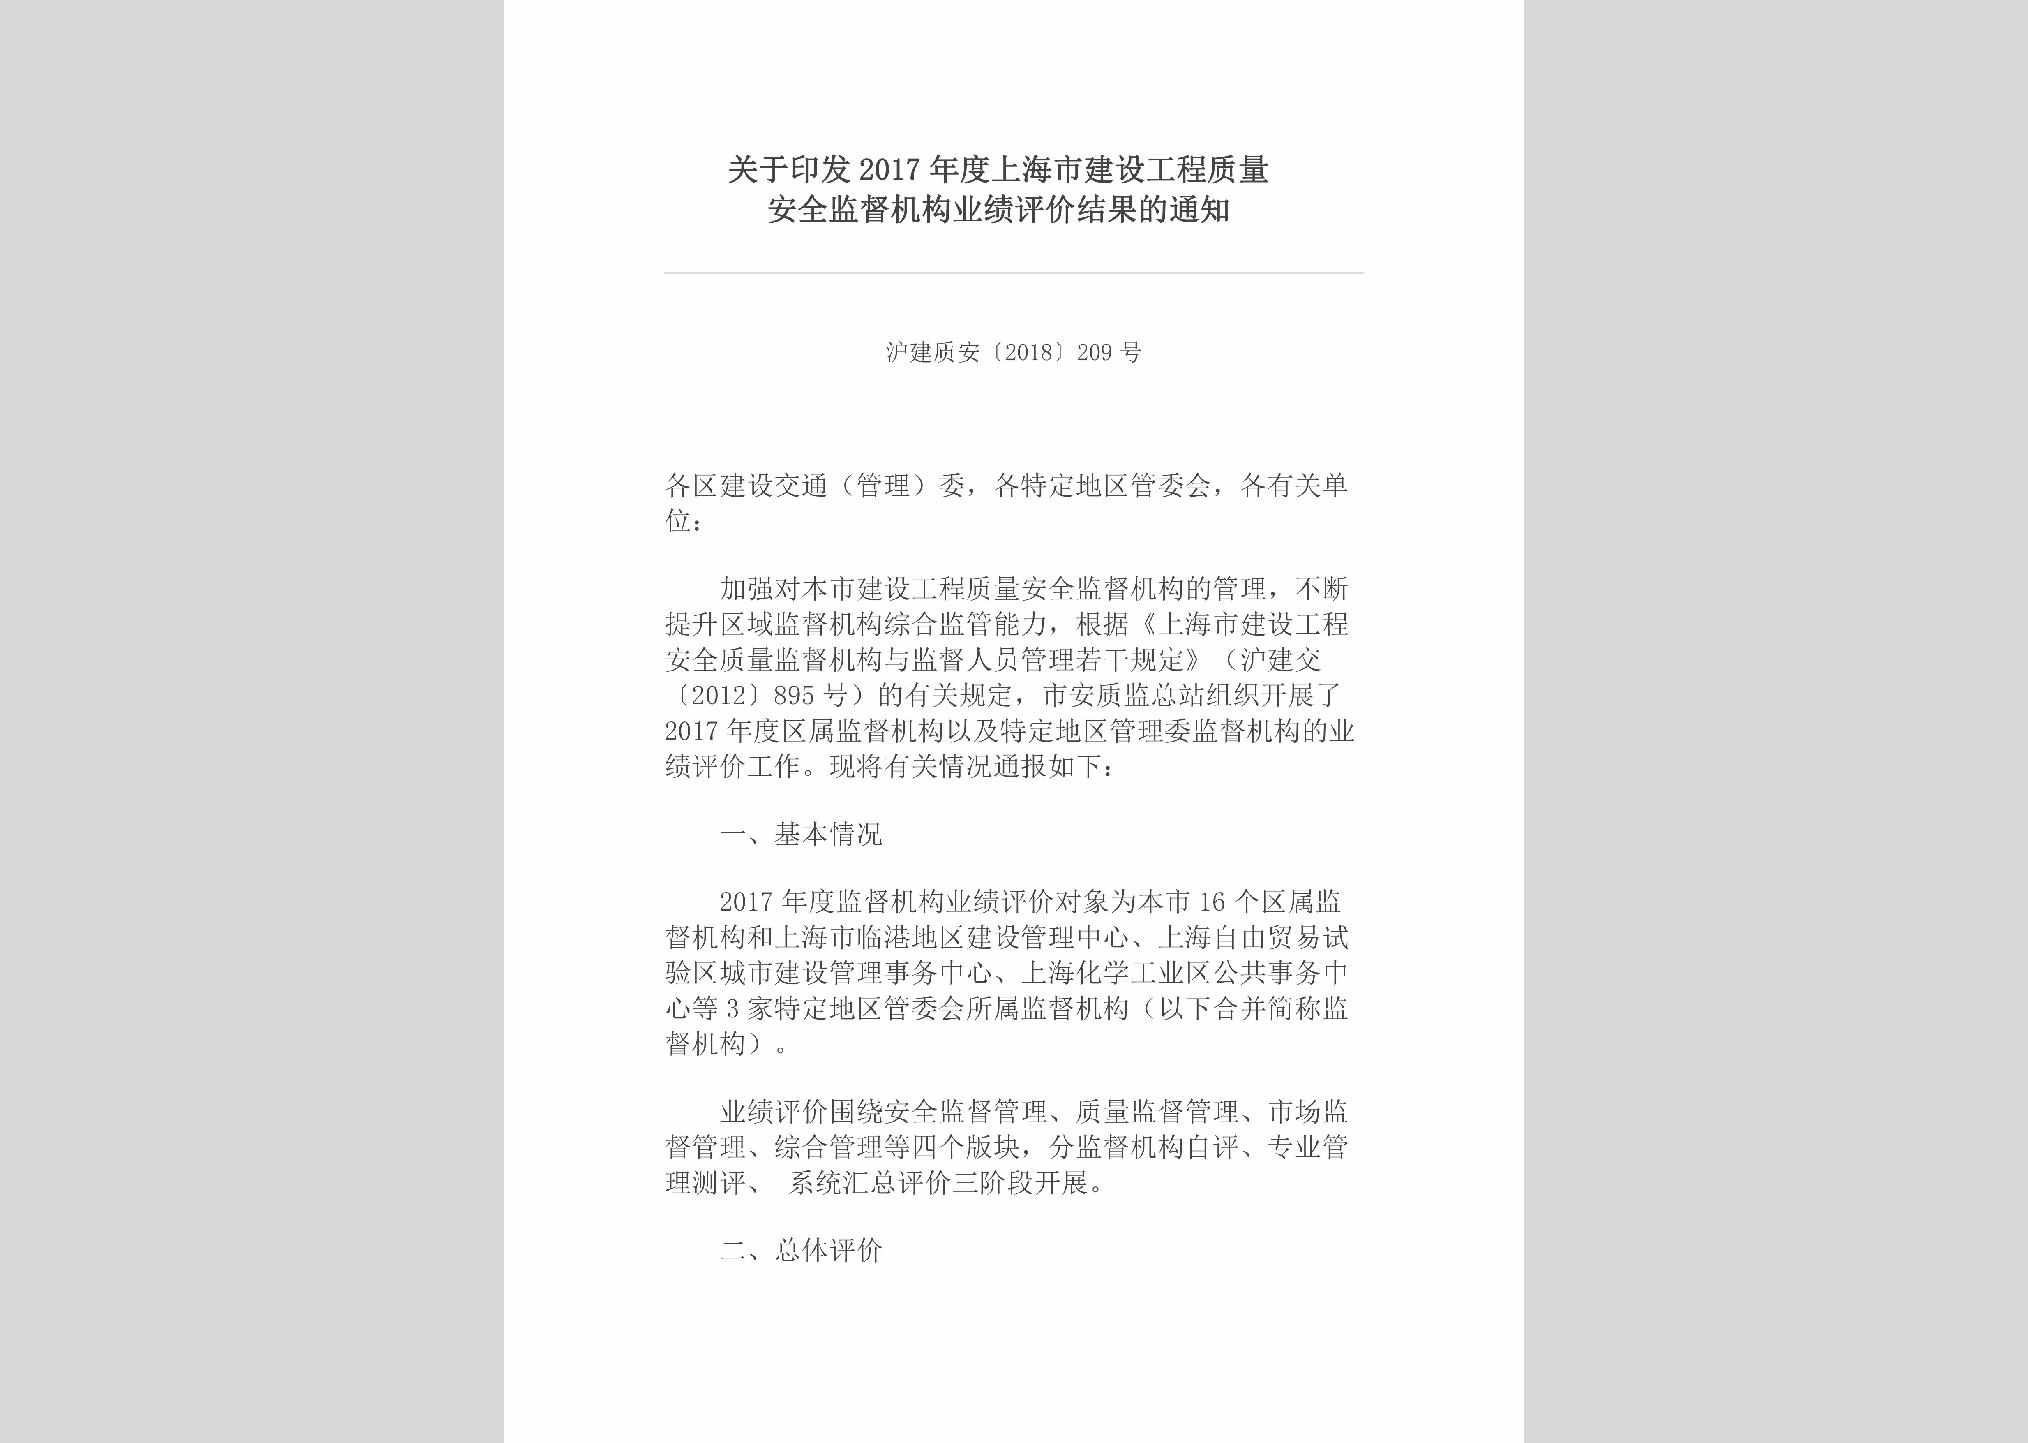 沪建质安[2018]209号：关于印发2017年度上海市建设工程质量安全监督机构业绩评价结果的通知